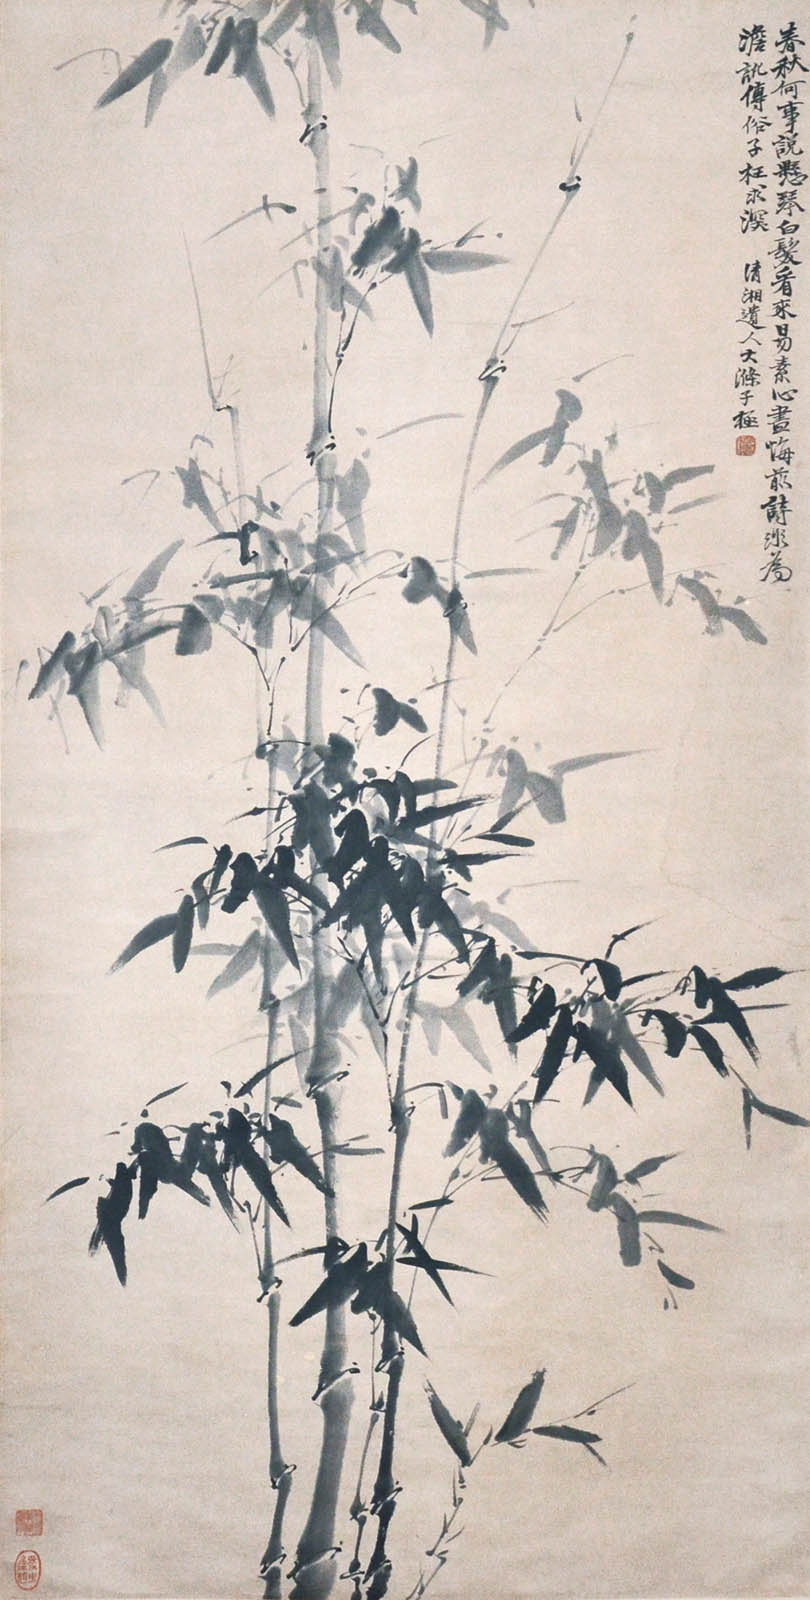 ? ?? (1642 - 1707) ??? Shi Tao Qing Dynasty Bamboo ? ??(1642 - 1707)???????????:???????,???????,